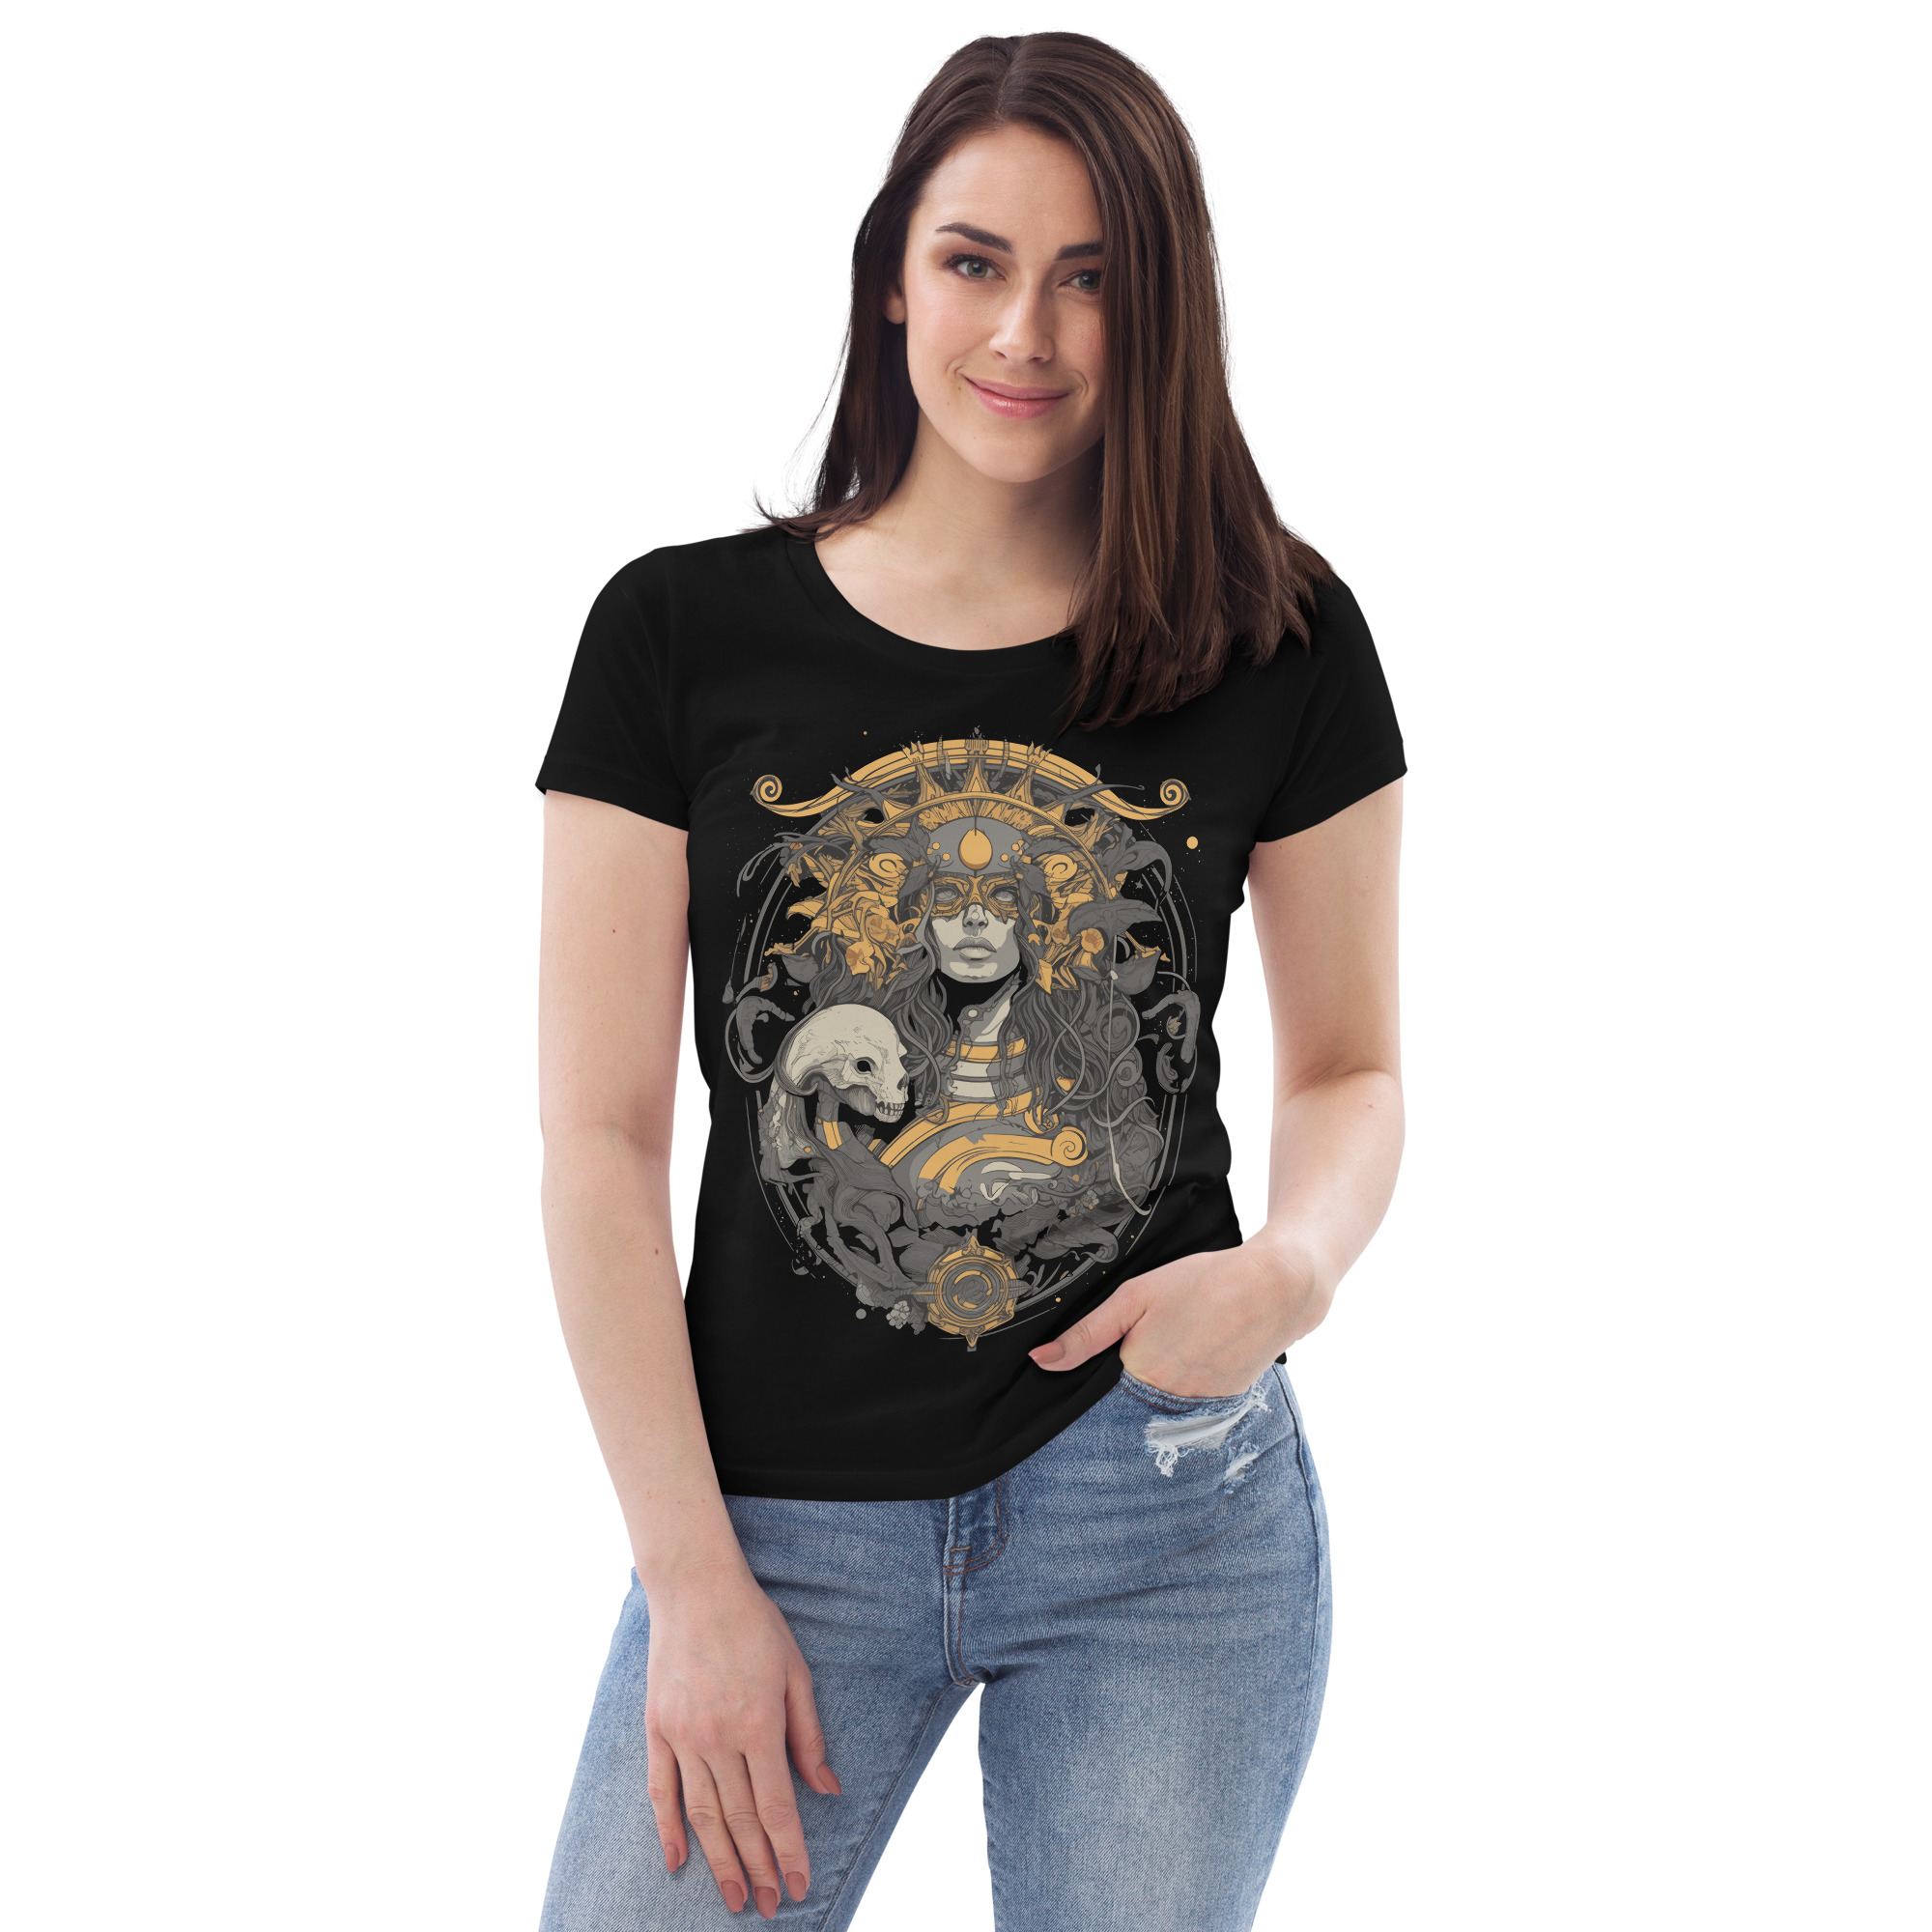 Women’s T-shirt – Dark Beauty – Black Reverie T-shirts Wearyt